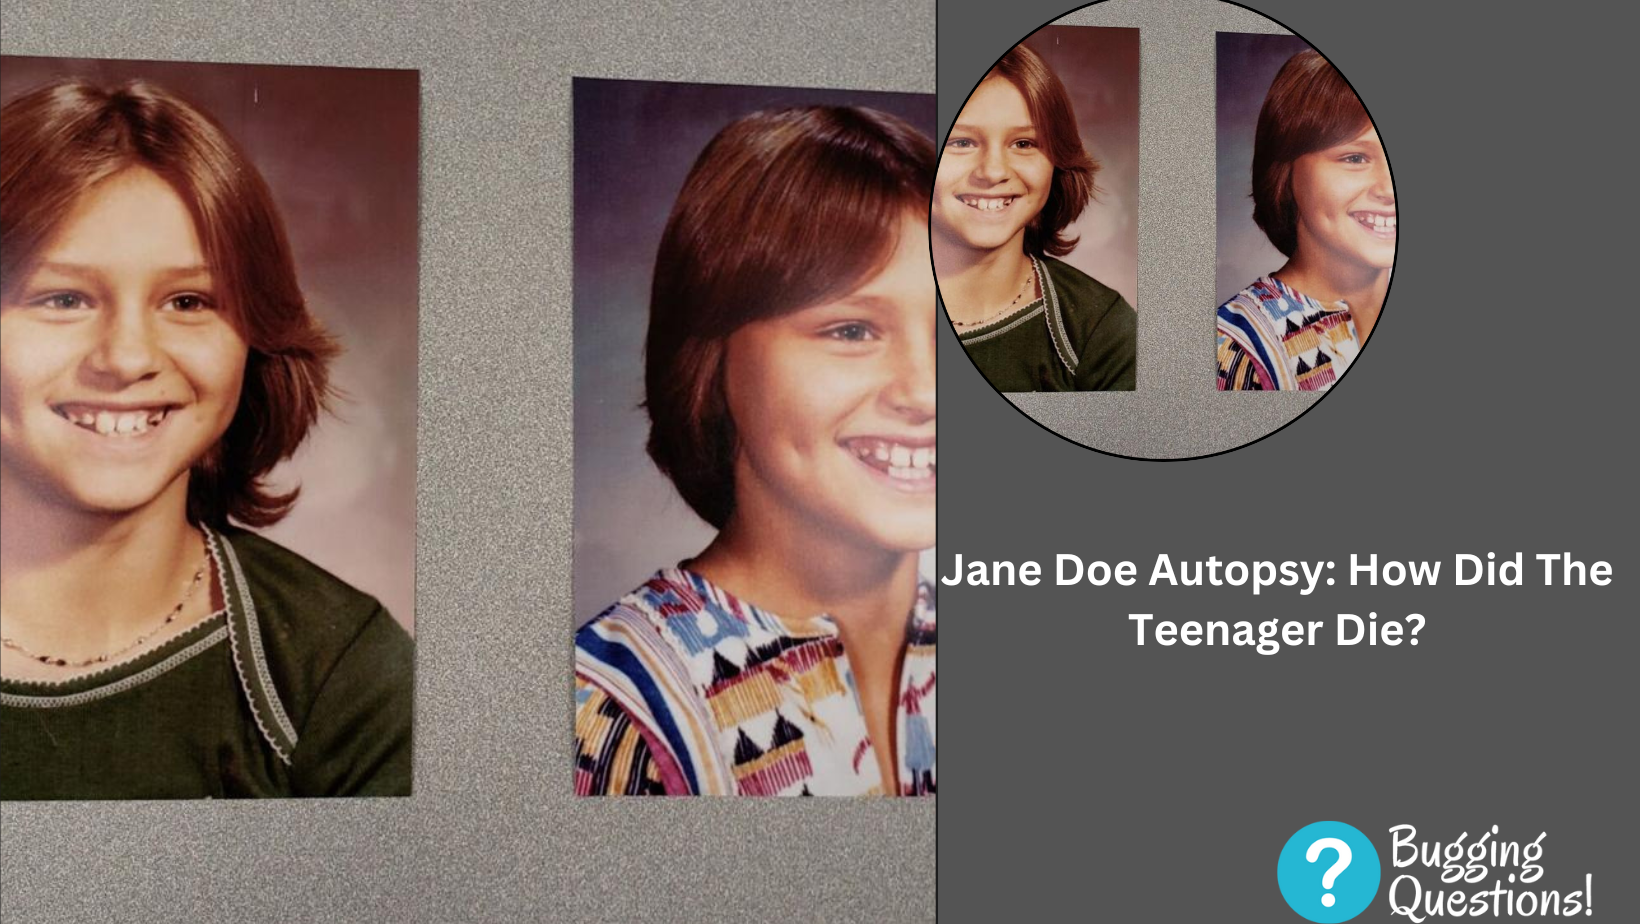 Jane Doe Autopsy: How Did The Teenager Die?